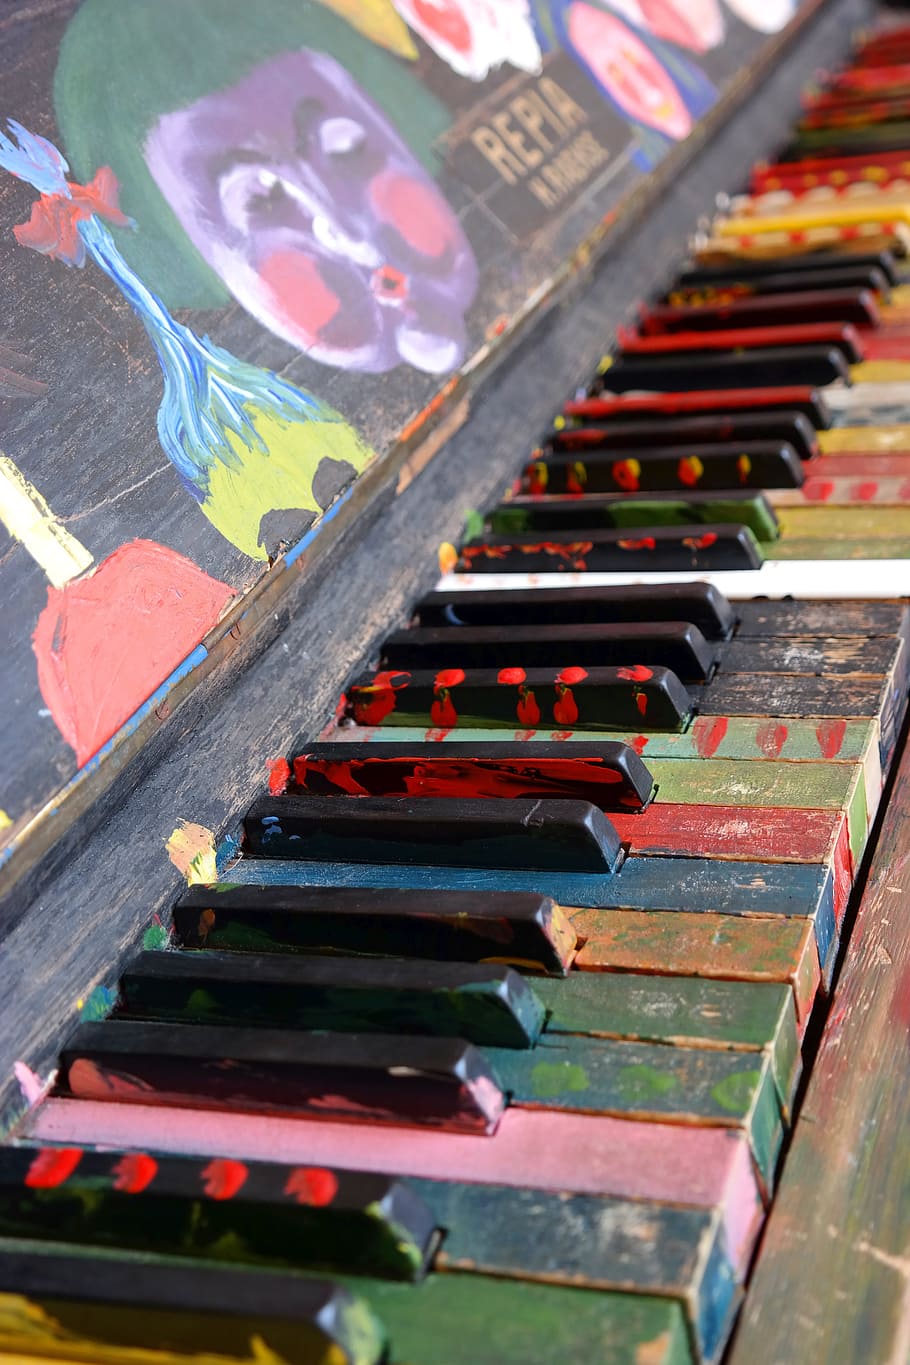 여러 가지 빛깔의 피아노, 피아노, 악기, 피아노 키보드, 열쇠, 음악, 피아노 건반, 피아노 연주, 색깔, 화려한